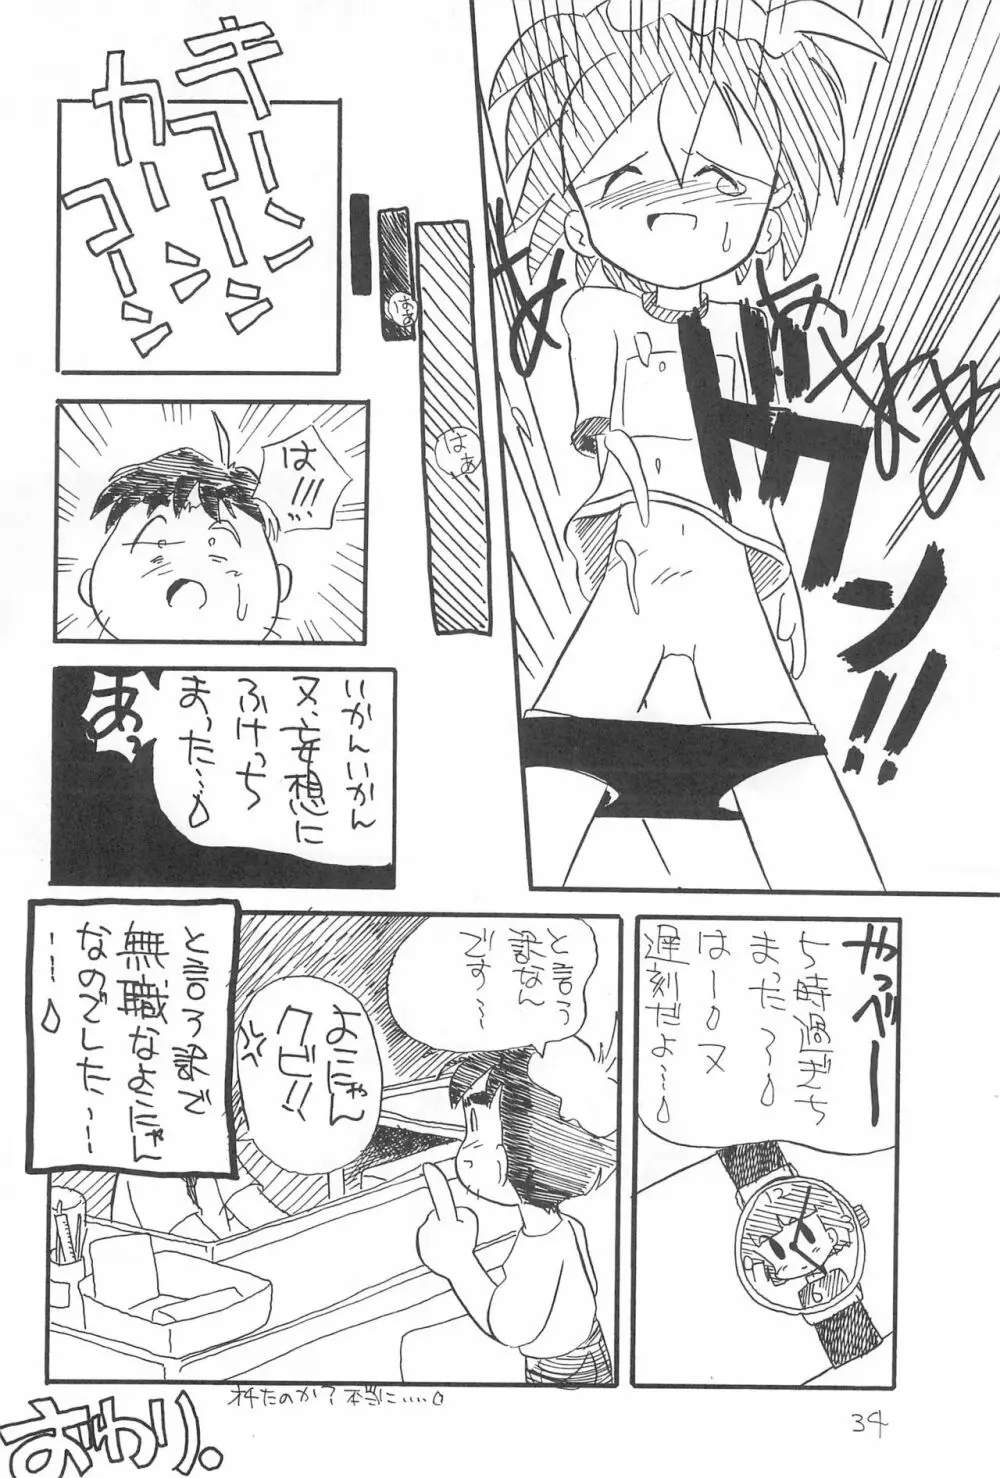 ぺたぺた 2 - page34